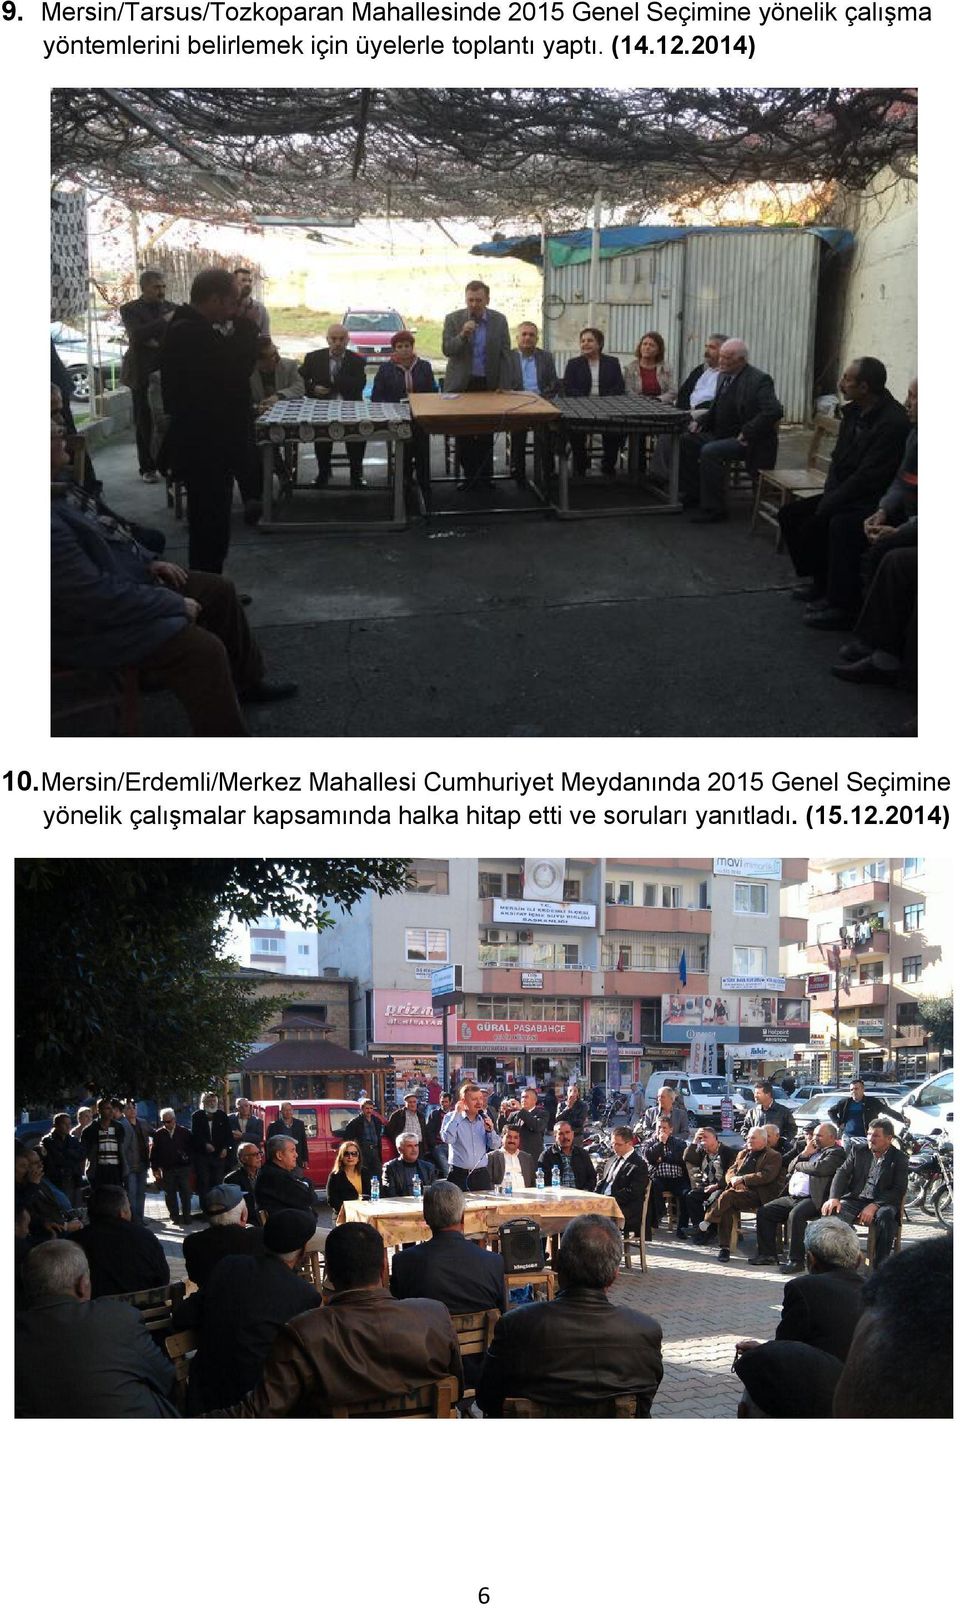 Mersin/Erdemli/Merkez Mahallesi Cumhuriyet Meydanında 2015 Genel Seçimine